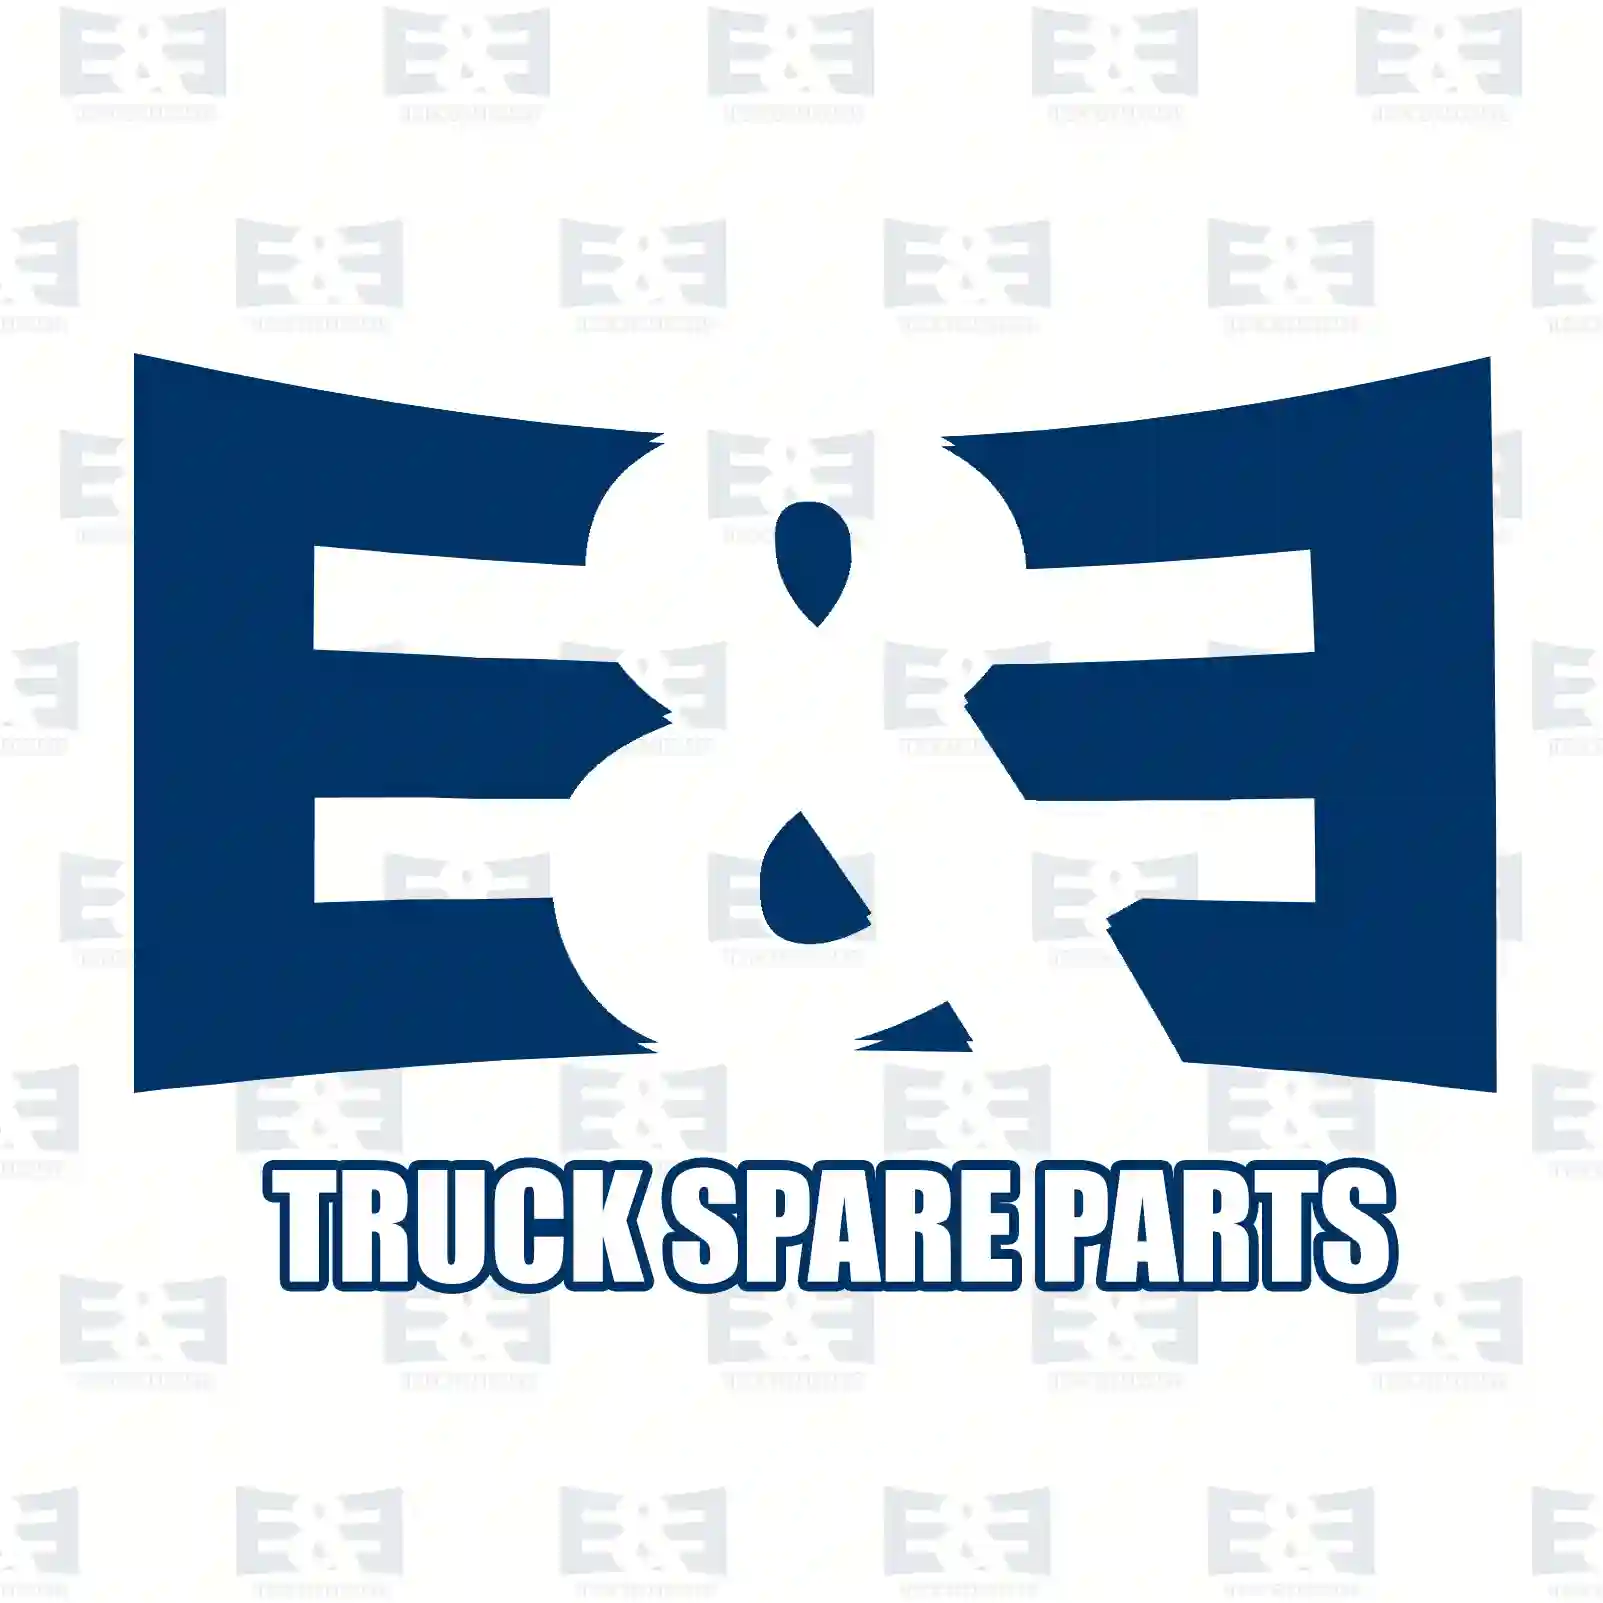 License plate lamp, 2E2297868, 0867463, 867463, 80903, 063052, 063597, 1089039, ELO007-0023 ||  2E2297868 E&E Truck Spare Parts | Truck Spare Parts, Auotomotive Spare Parts License plate lamp, 2E2297868, 0867463, 867463, 80903, 063052, 063597, 1089039, ELO007-0023 ||  2E2297868 E&E Truck Spare Parts | Truck Spare Parts, Auotomotive Spare Parts